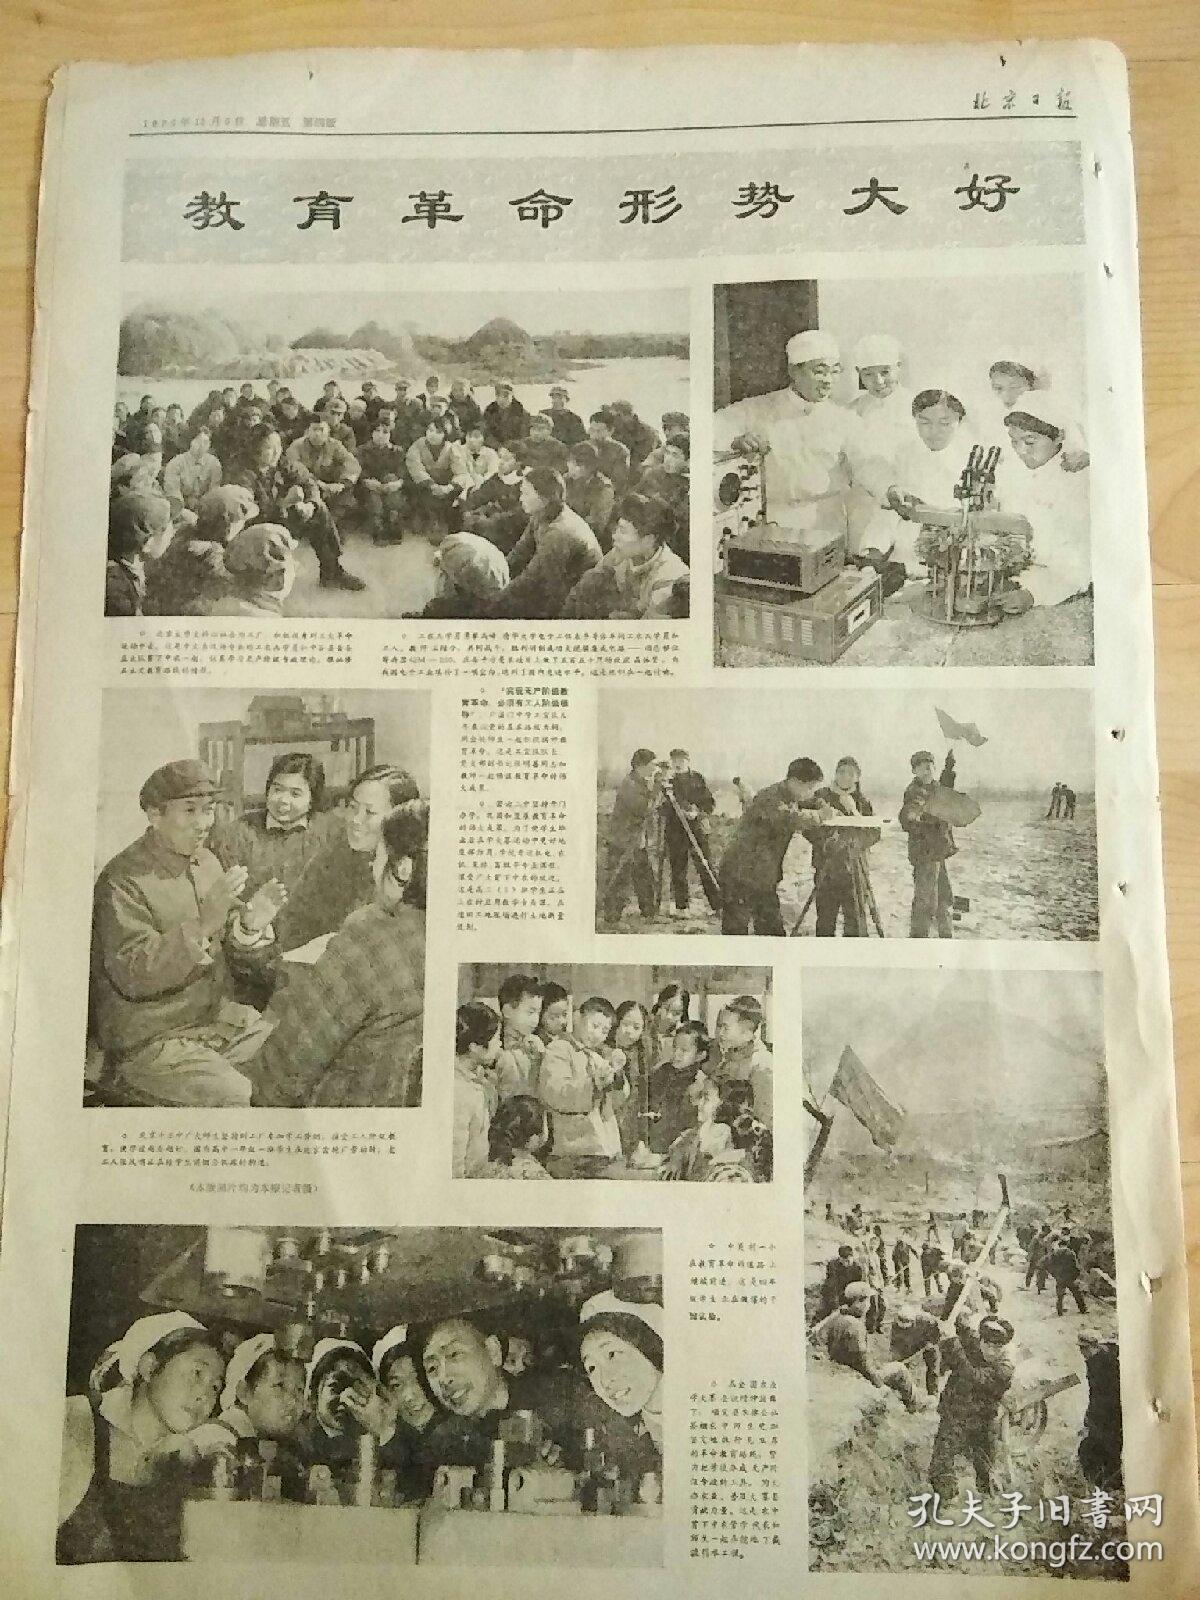 报纸北京日报1975年12月5日（4开四版）
福特总统和夫人举行告别宴会；
邓小平副总理的祝酒词；